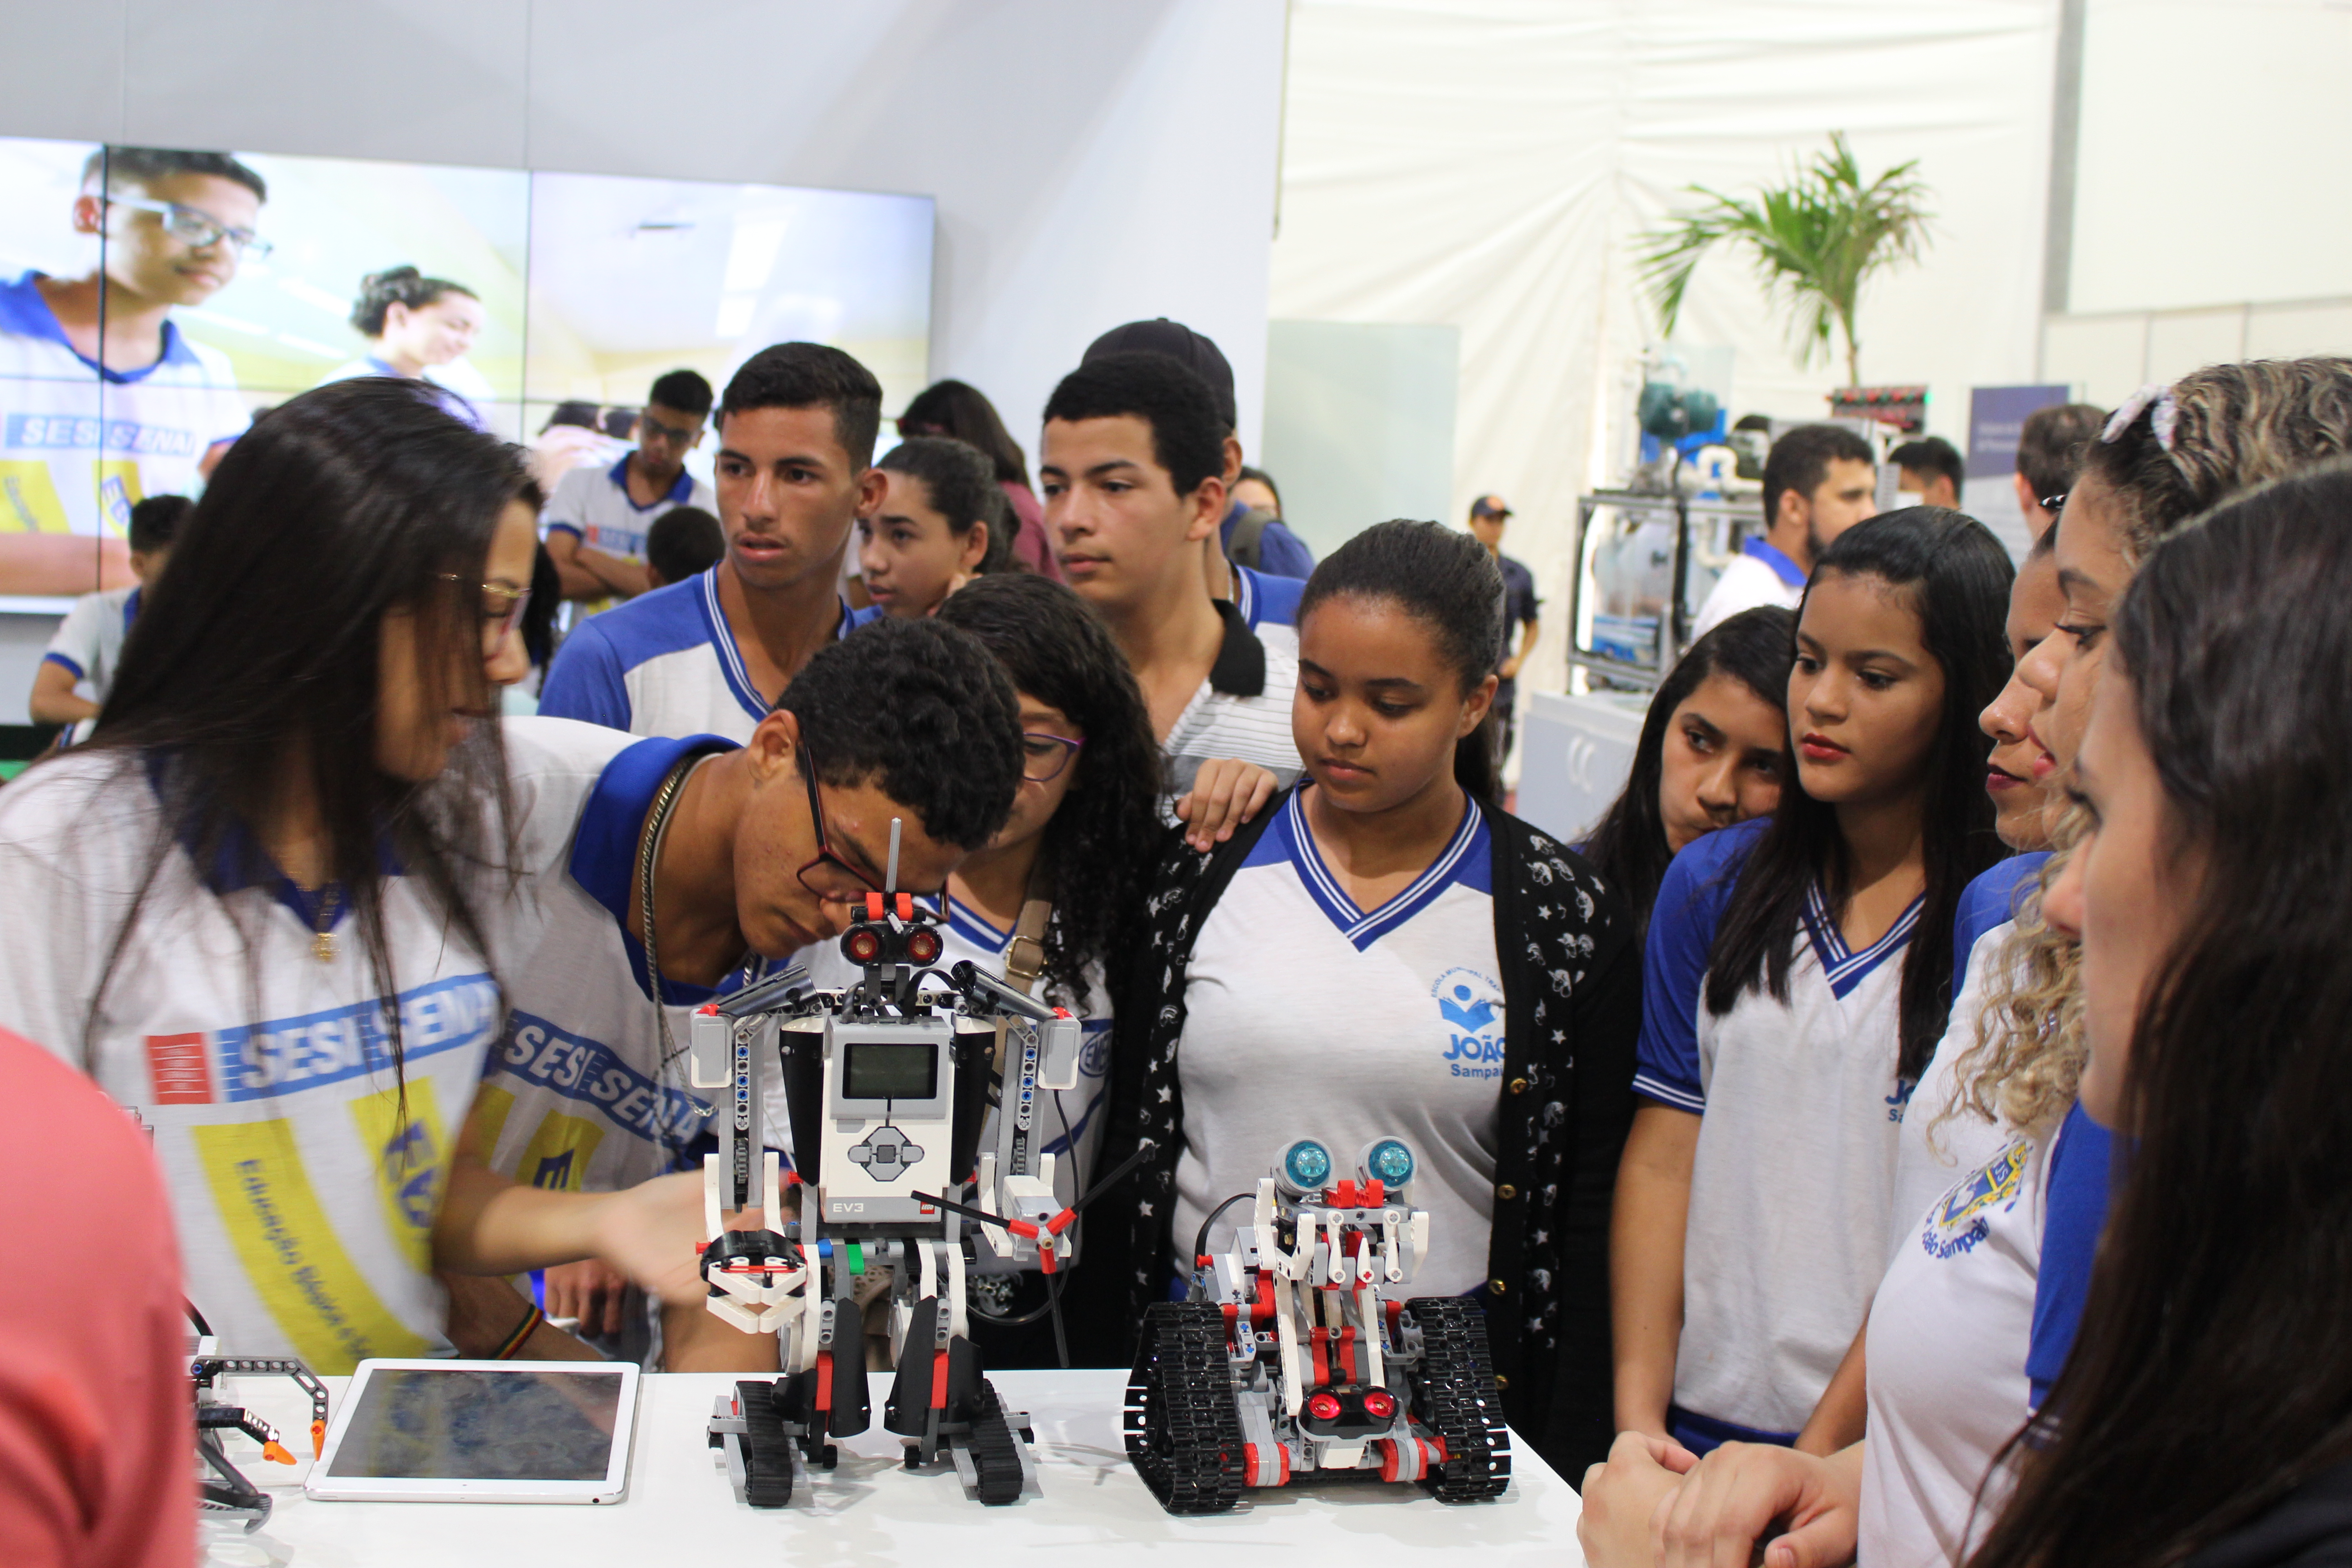 Grupo de jovens com uniformes escolares divertem-se com robô em exposição